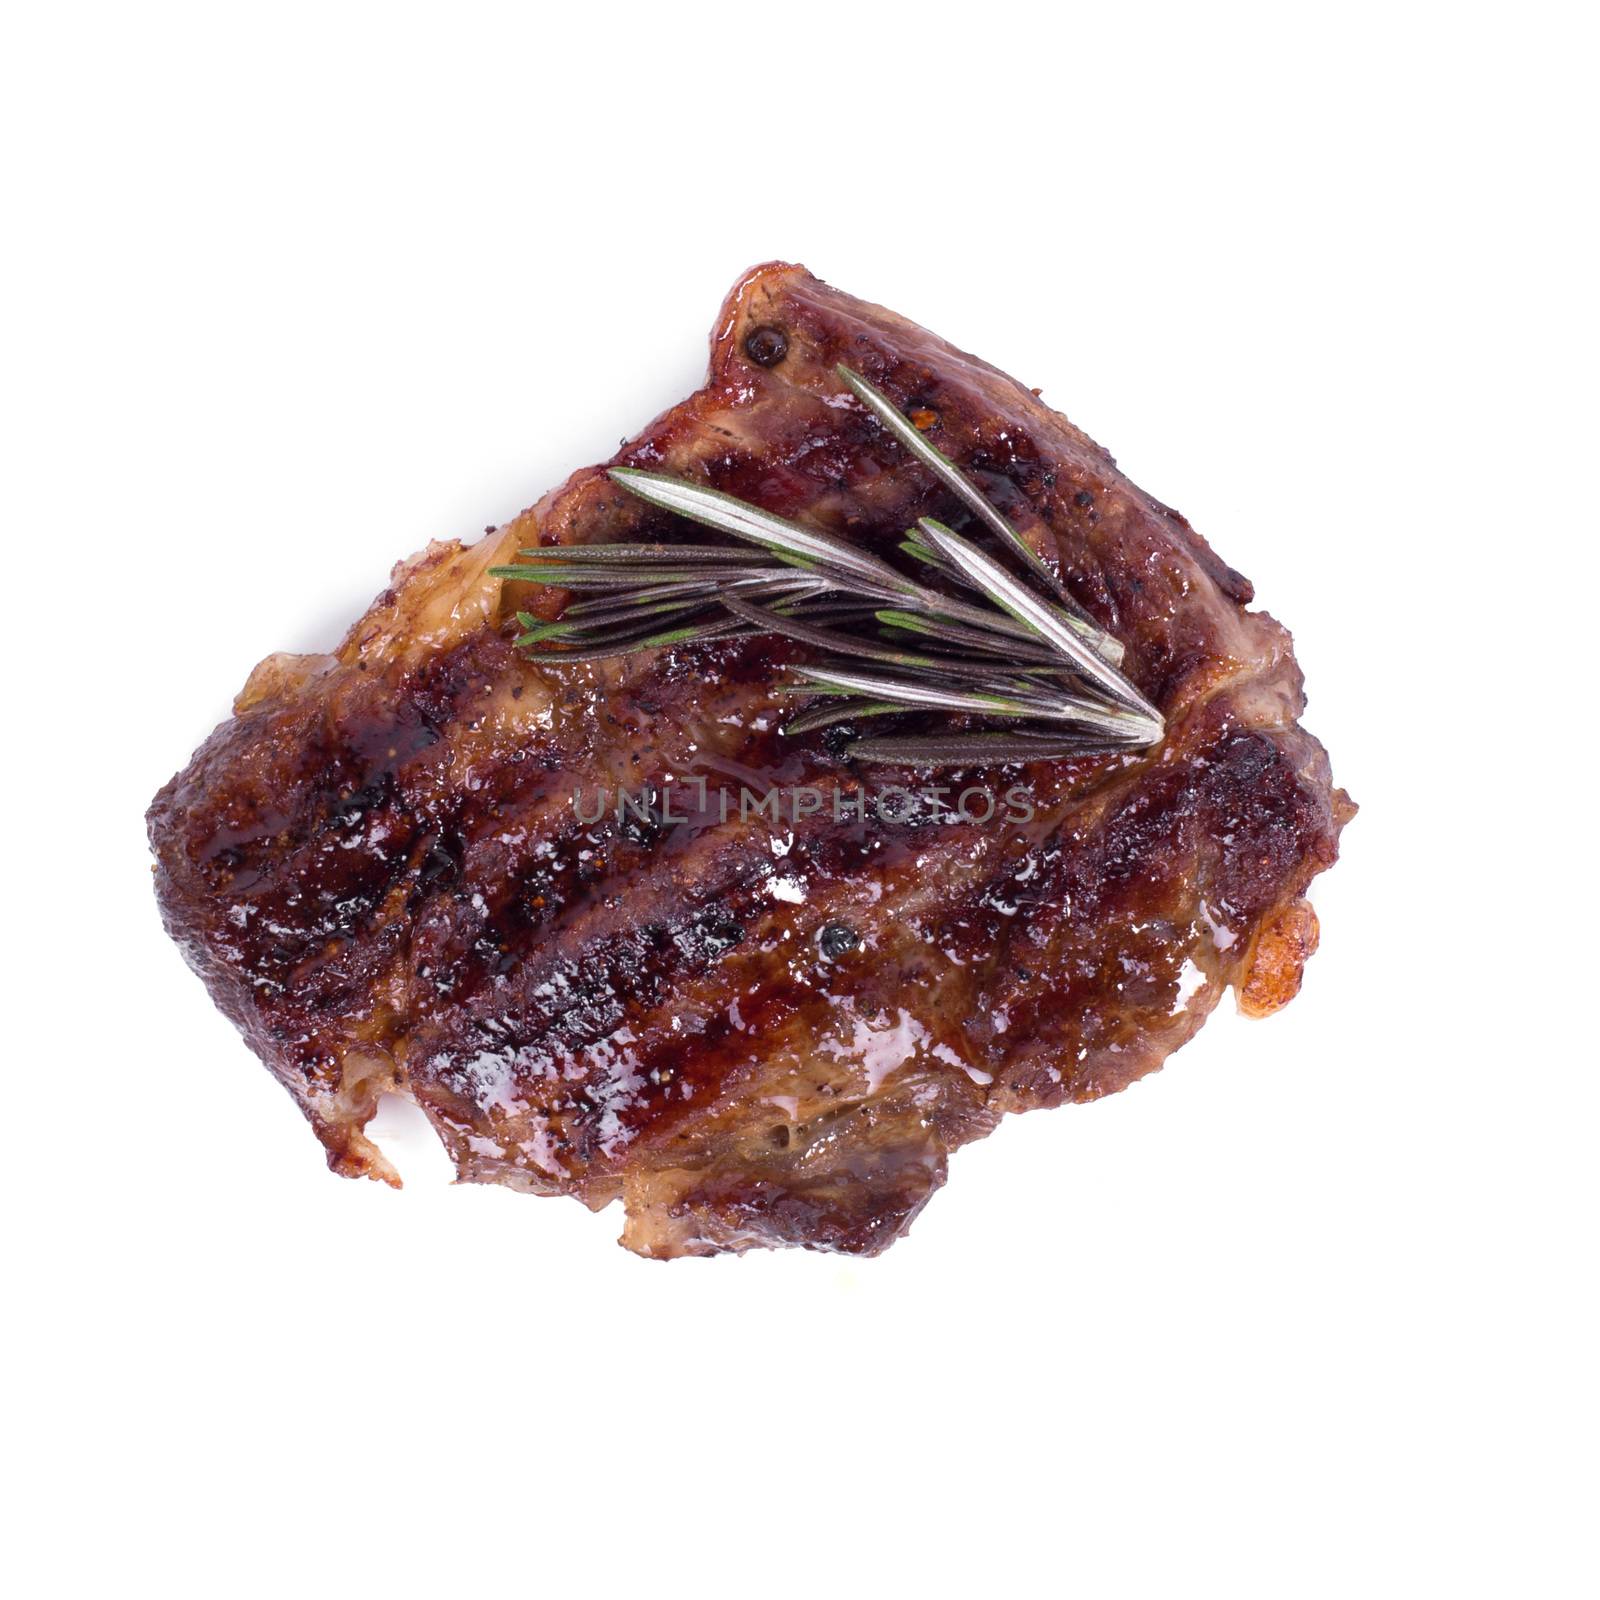 Grilled steak by rufatjumali